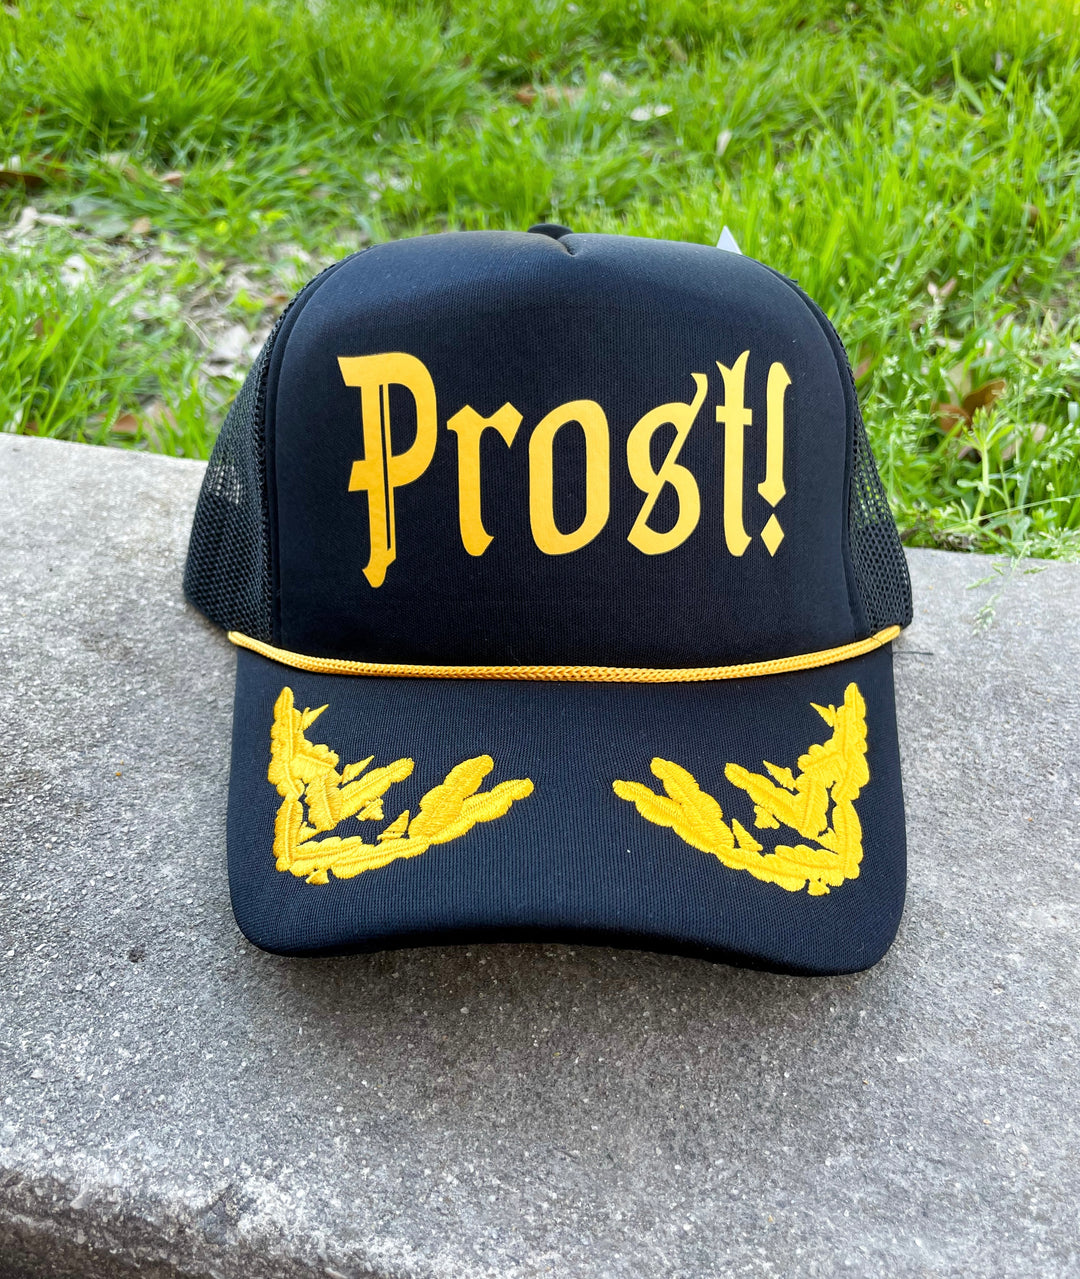 Prost! Captain's Hat